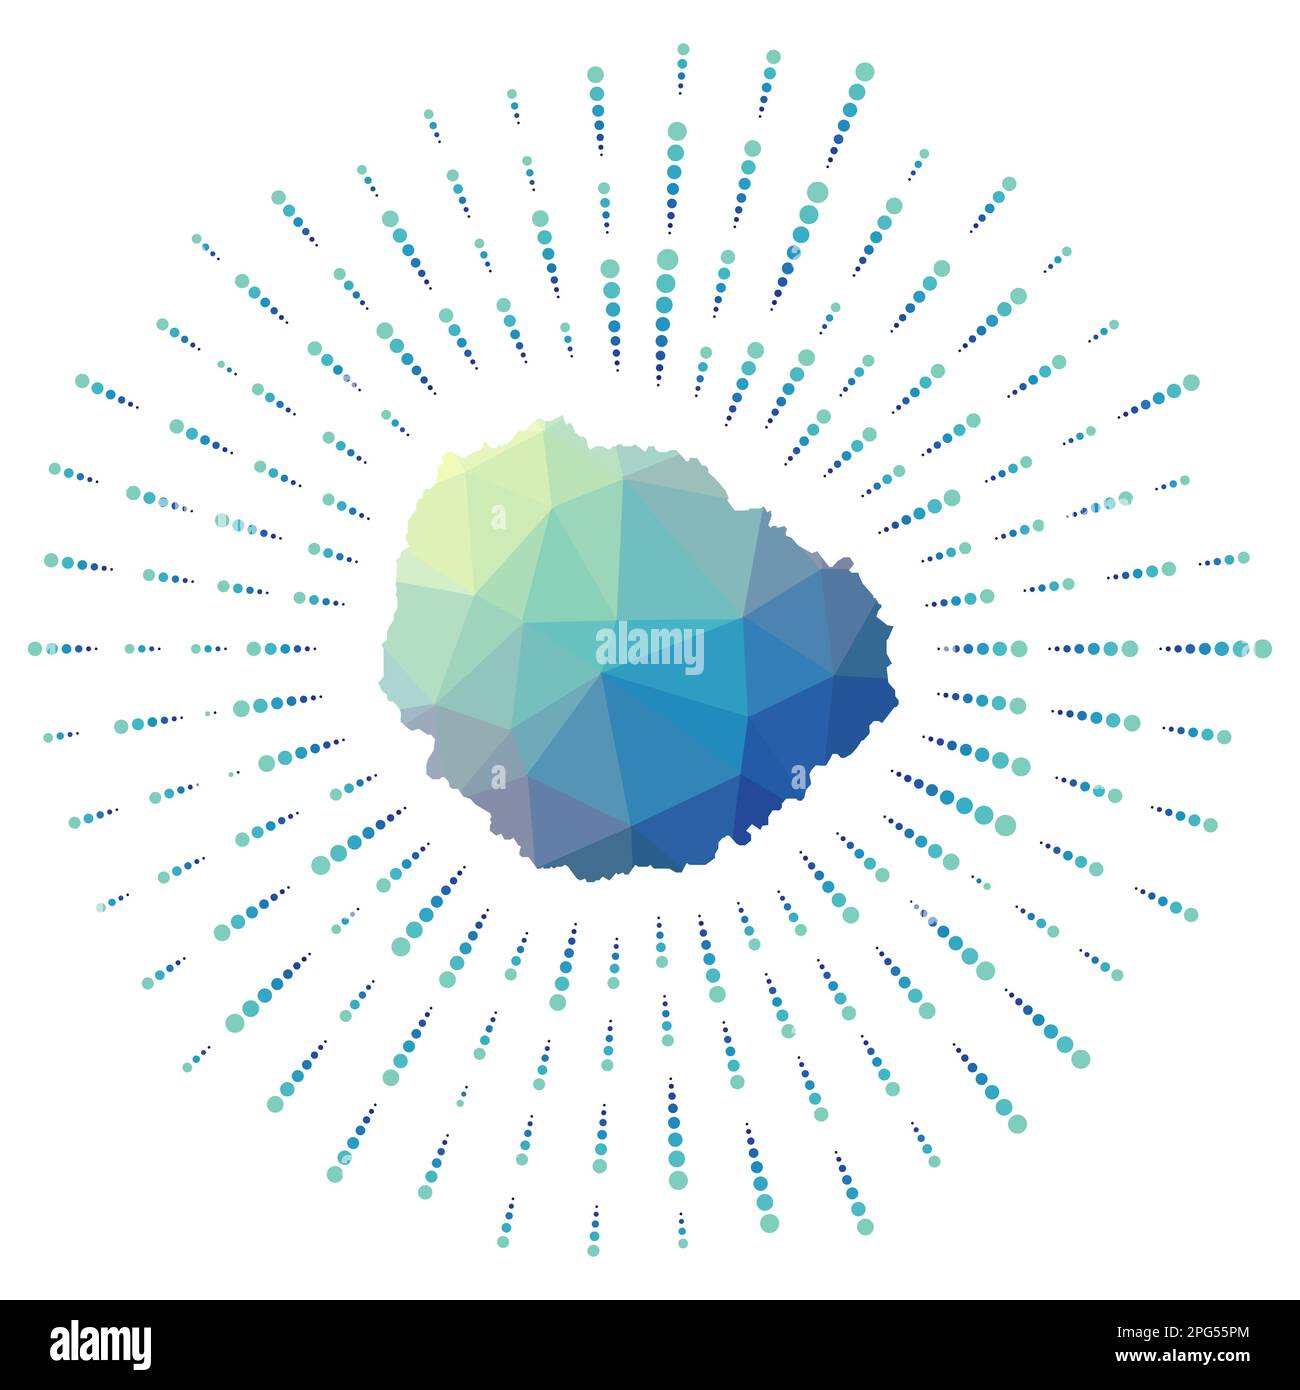 Die Form von La Gomera, polygonaler Sonnenaufgang. Karte der Insel mit bunten Sternrochen. La Gomera Illustration in Digital, Technologie, Internet, Netzwerk st Stock Vektor